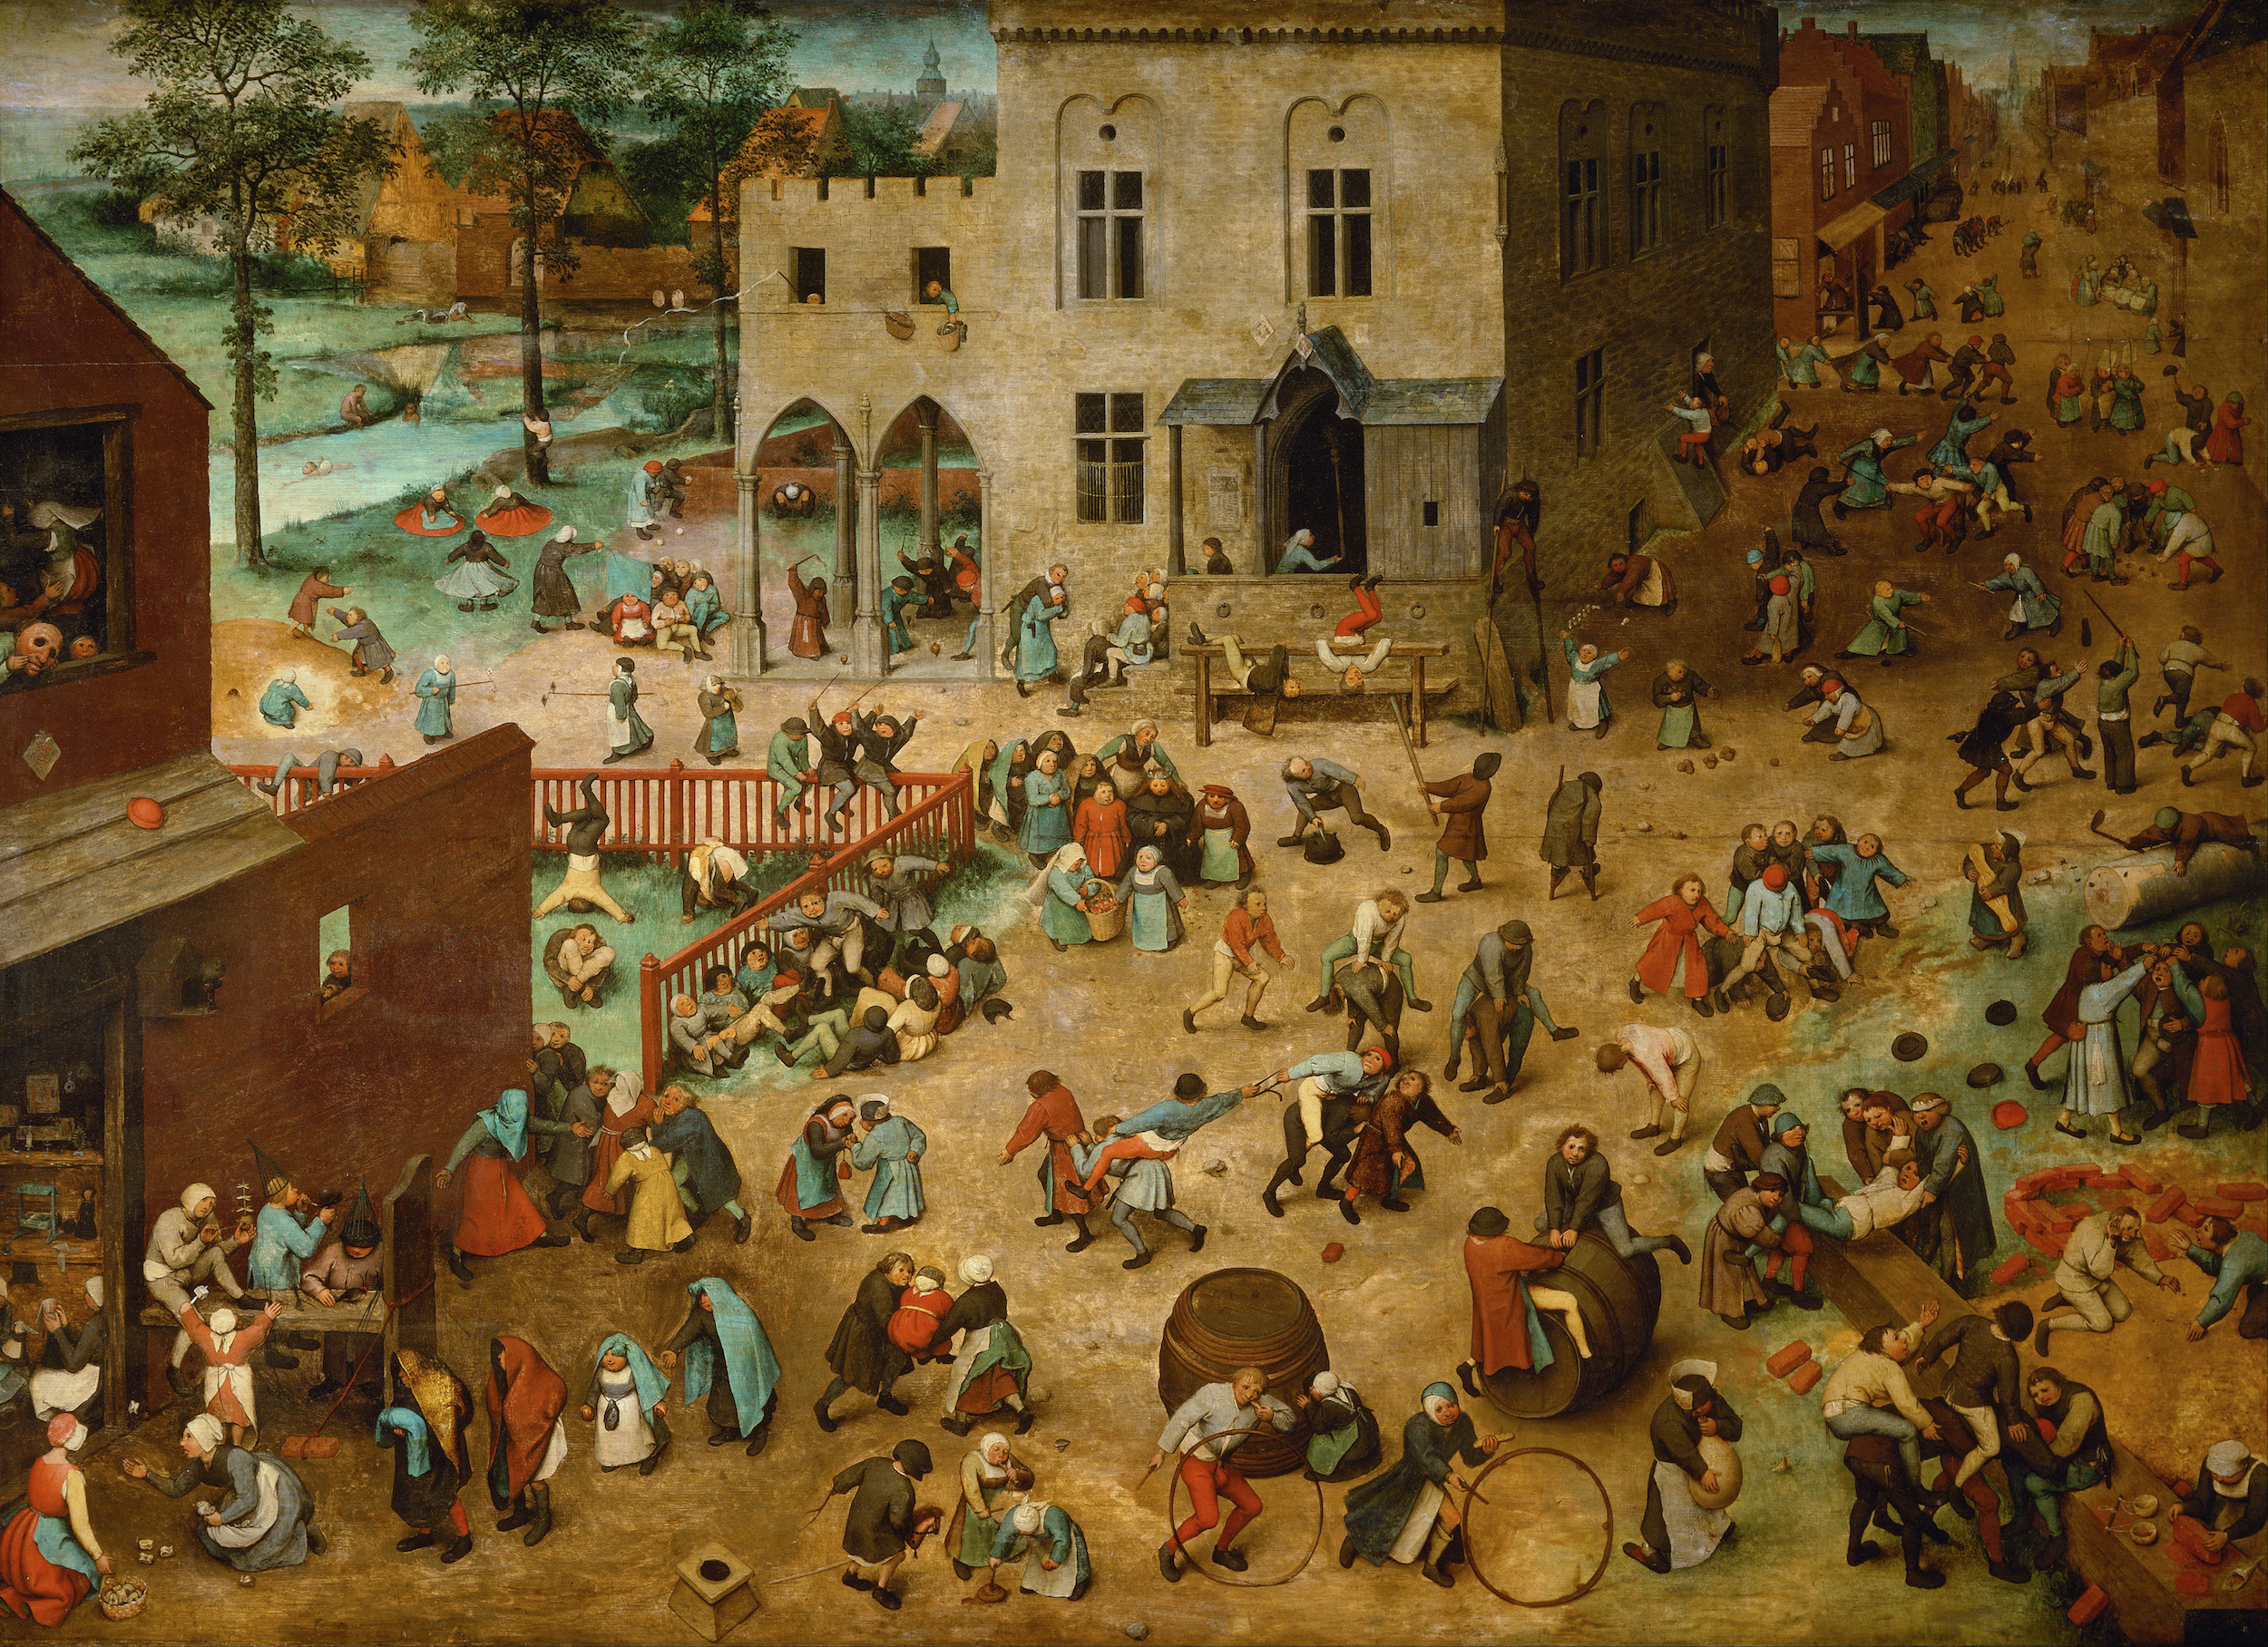 Juegos de niños by Pieter Bruegel el Viejo - 1560 - 118 x 161 cm Kunsthistorisches Museum